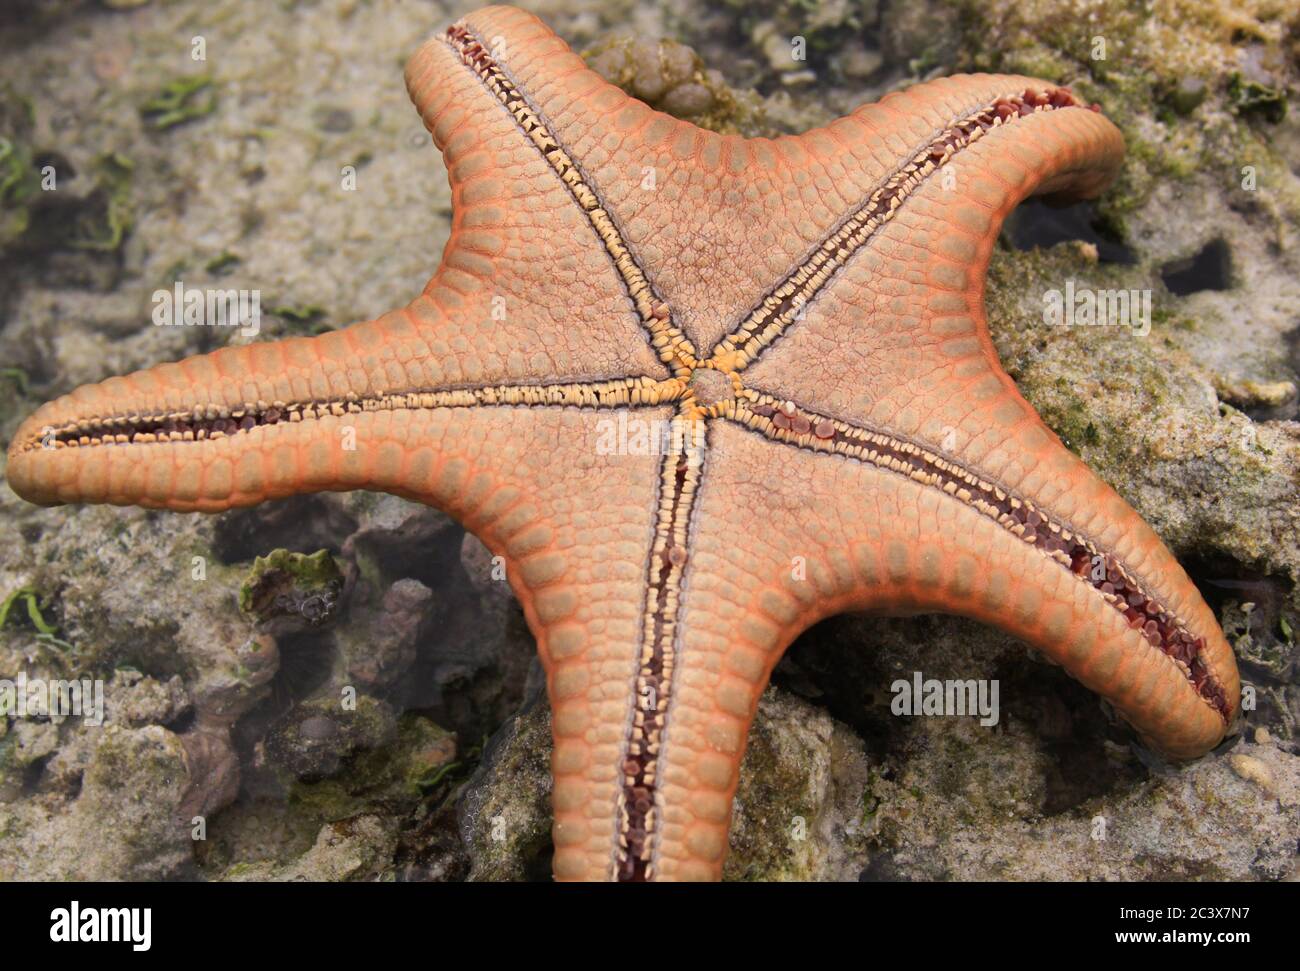 Orange Sea Star drehte sich um, um Bodendetails und Struktur zu beobachten Stockfoto